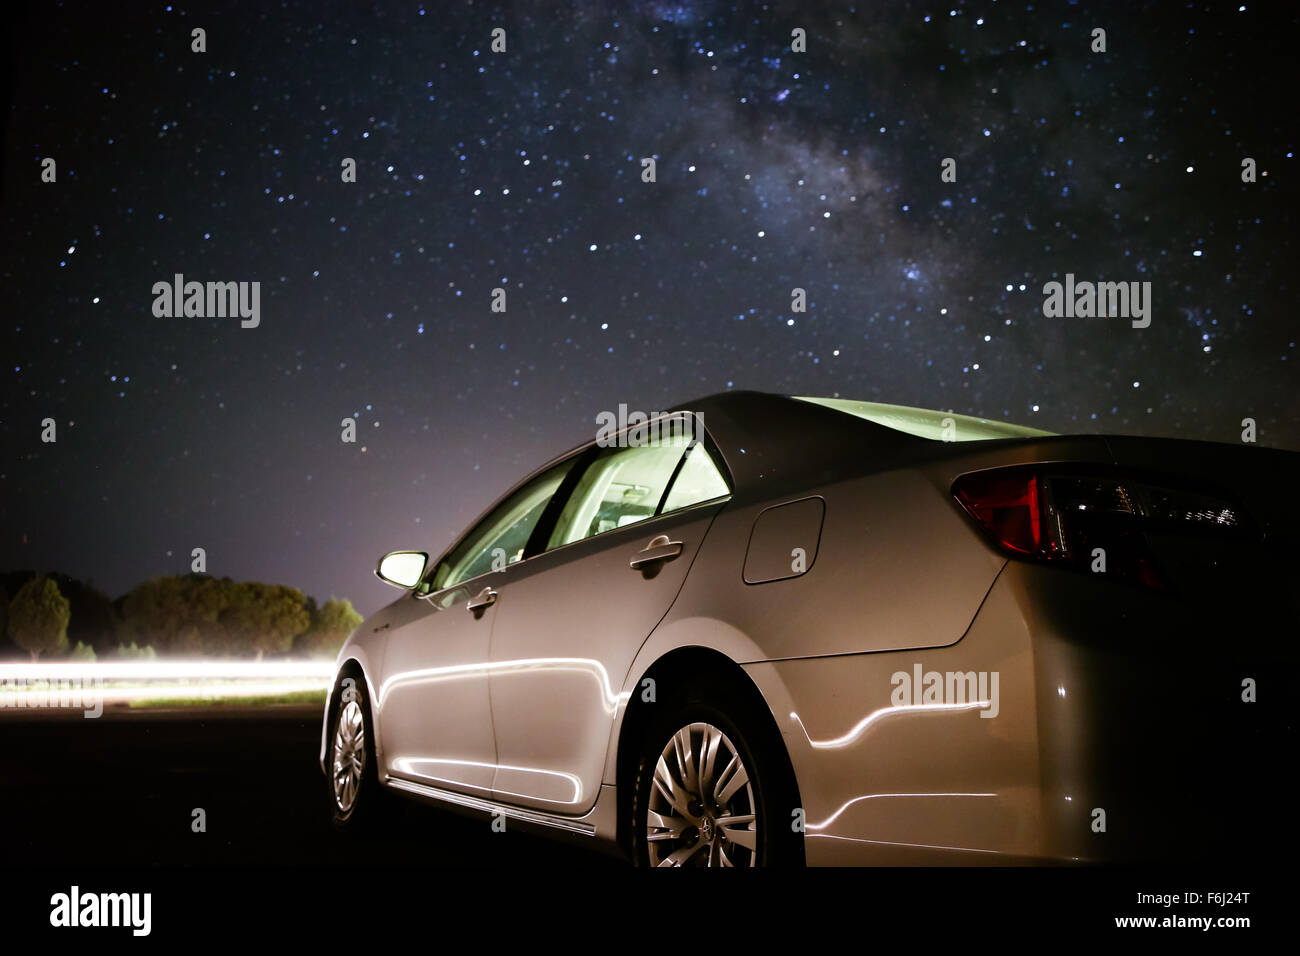 Toyota Camry unter der Milchstraße Stockfoto